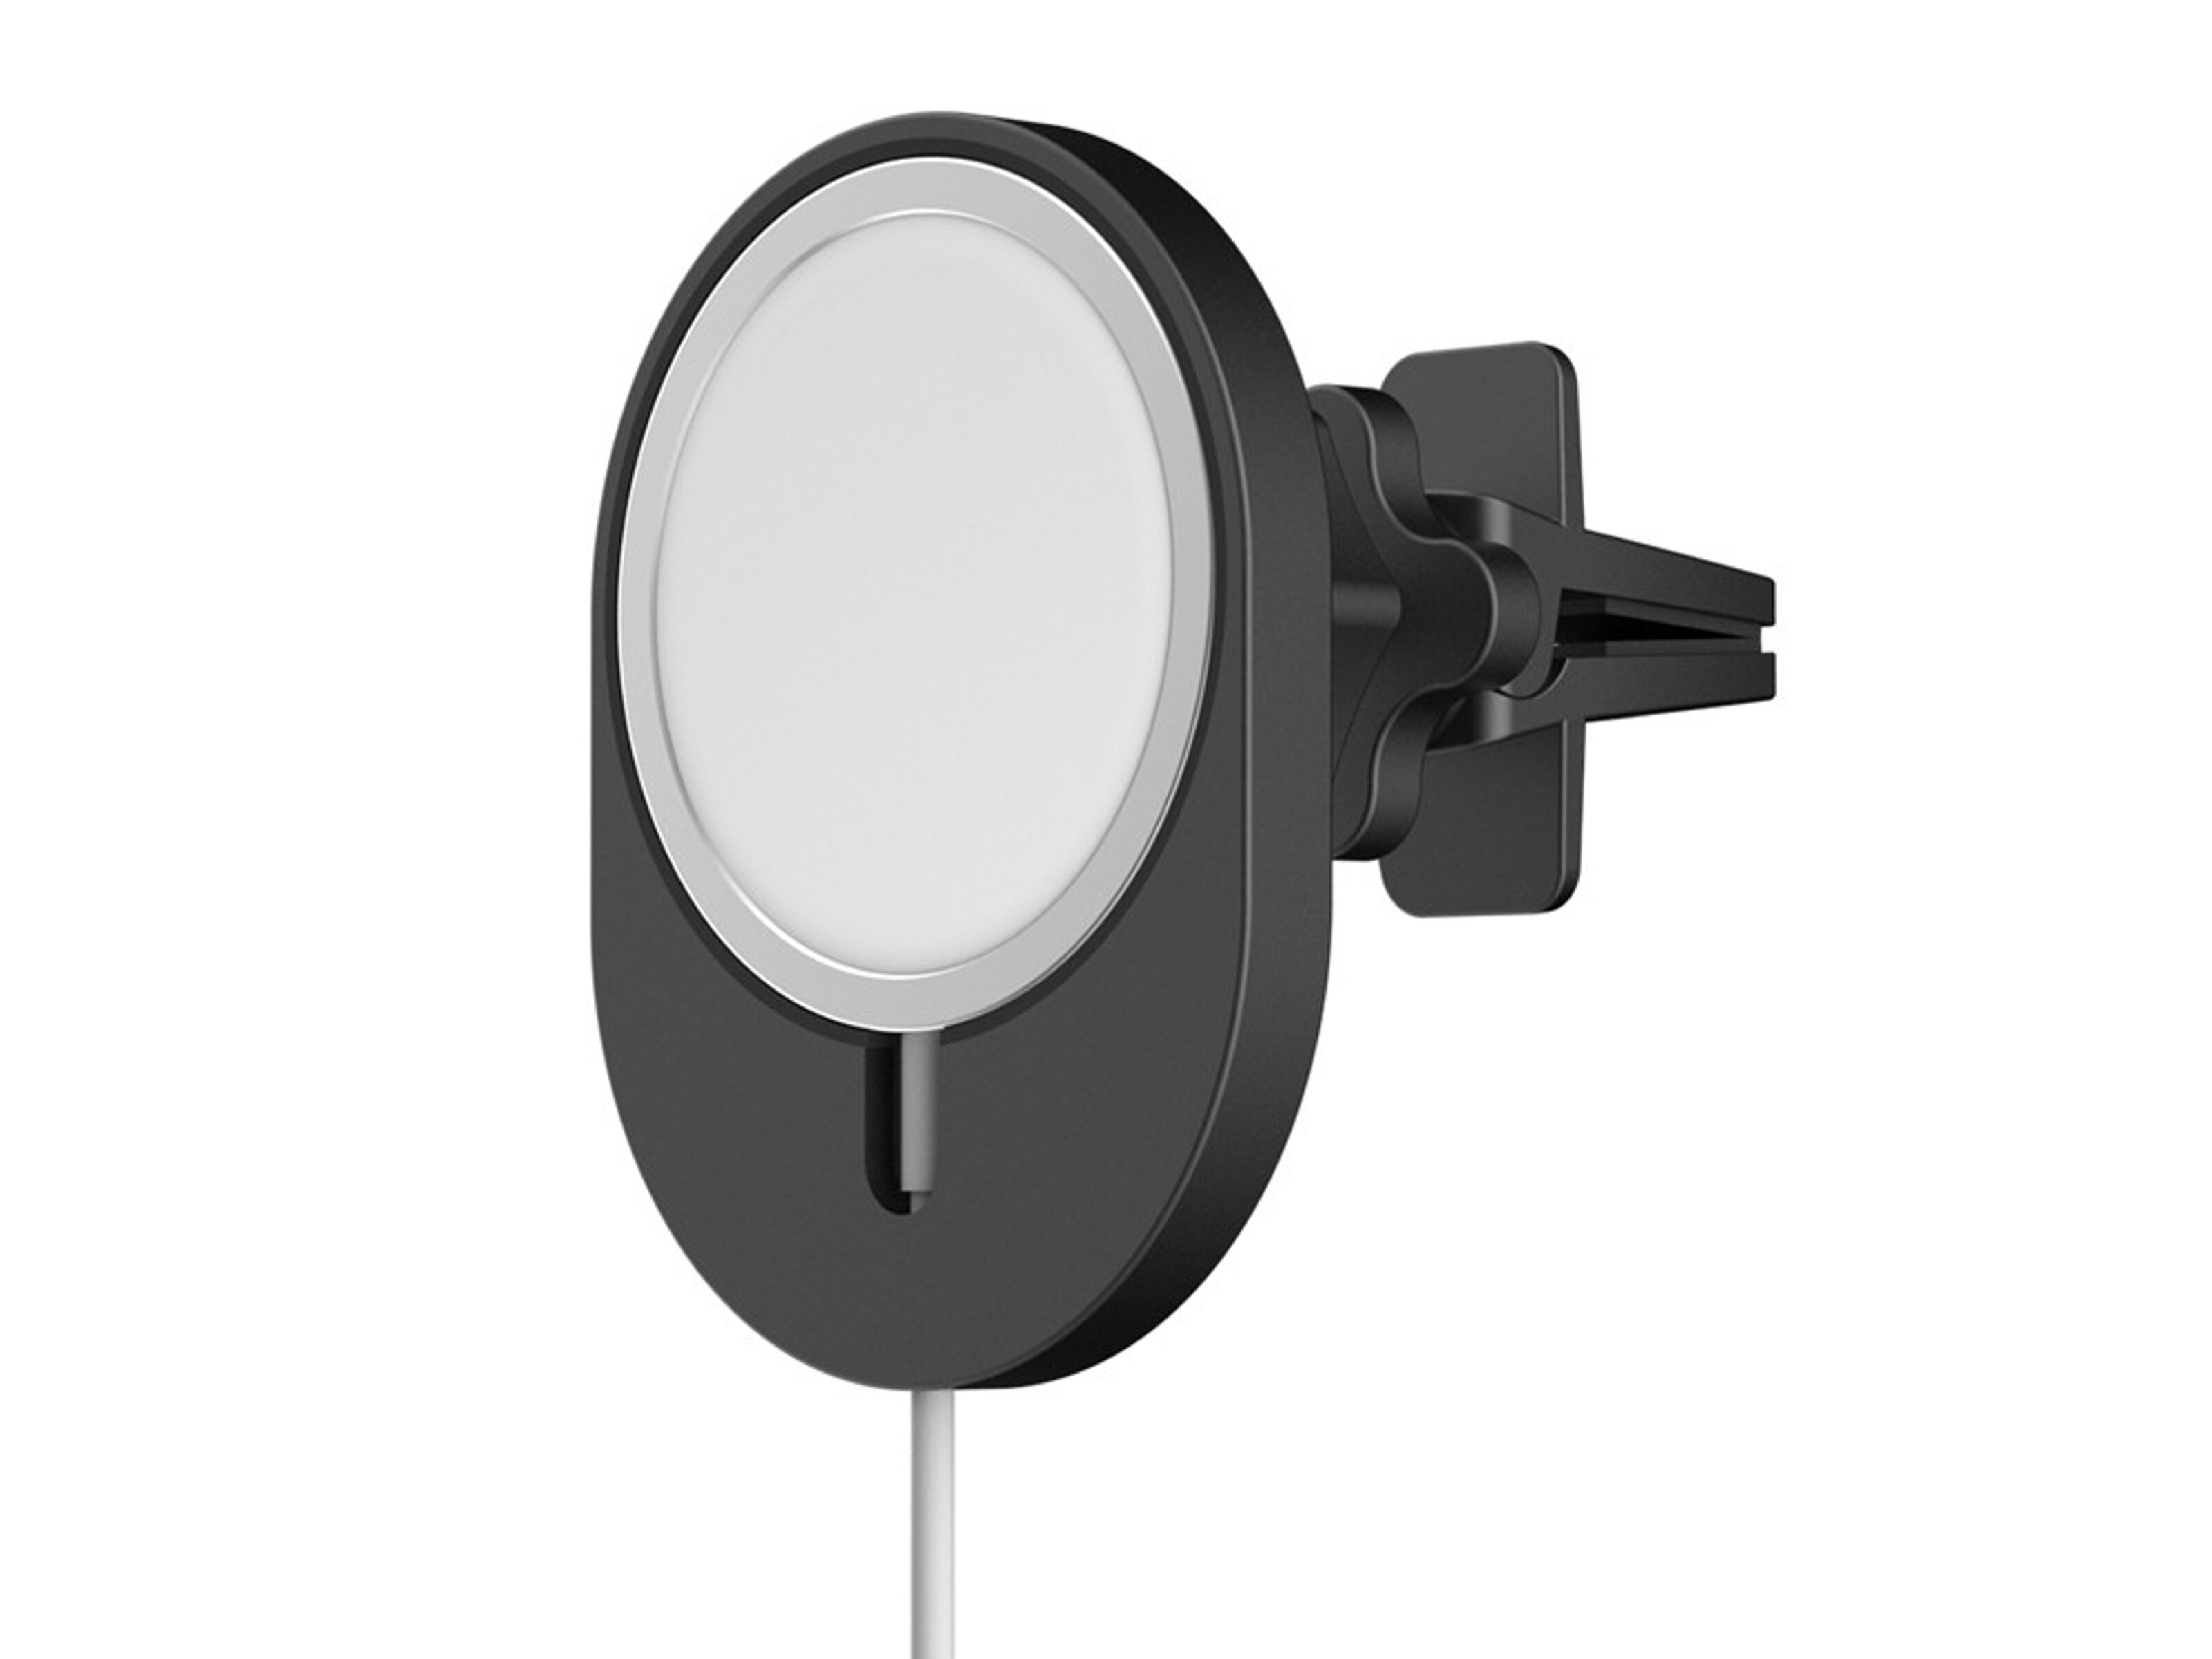 Chargeur Voiture Sans Fil Compatible avec Apple iPhone 12/Mini/Pro